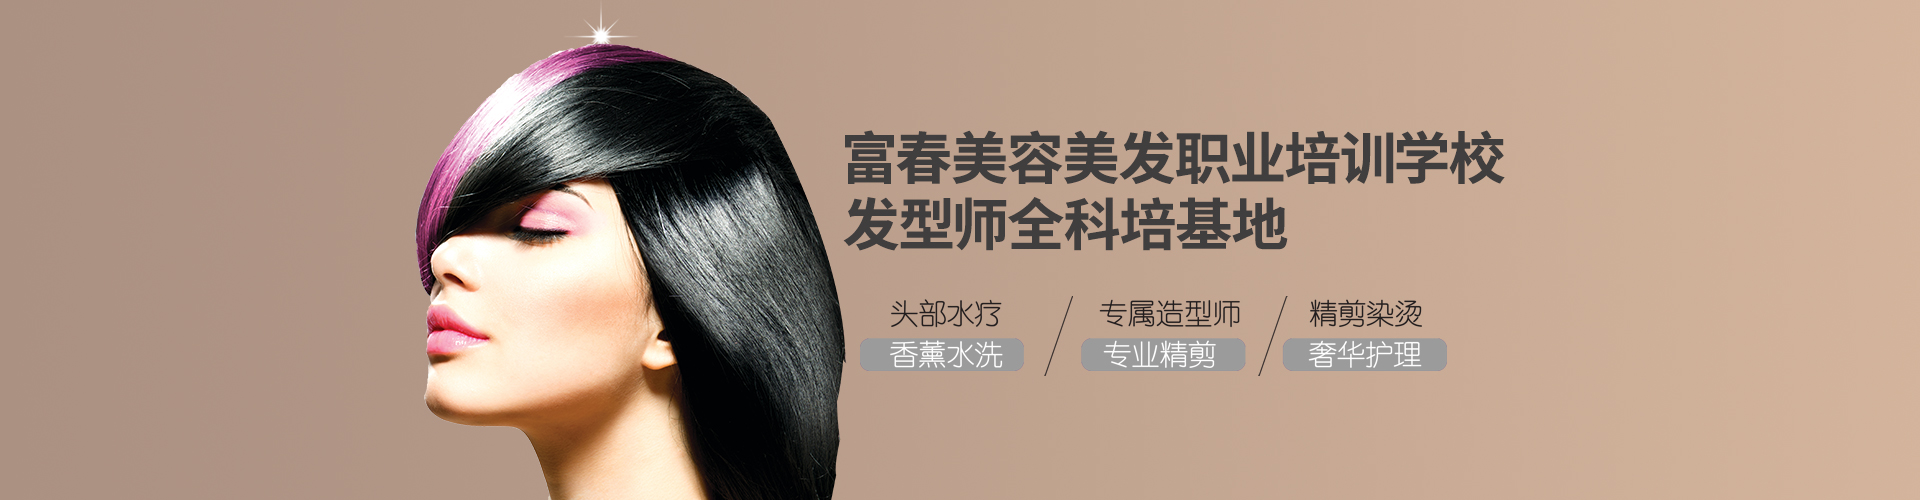 社会公益联盟-蚌埠市美容美发行业协会-蚌埠美容美发-蚌埠美发协会